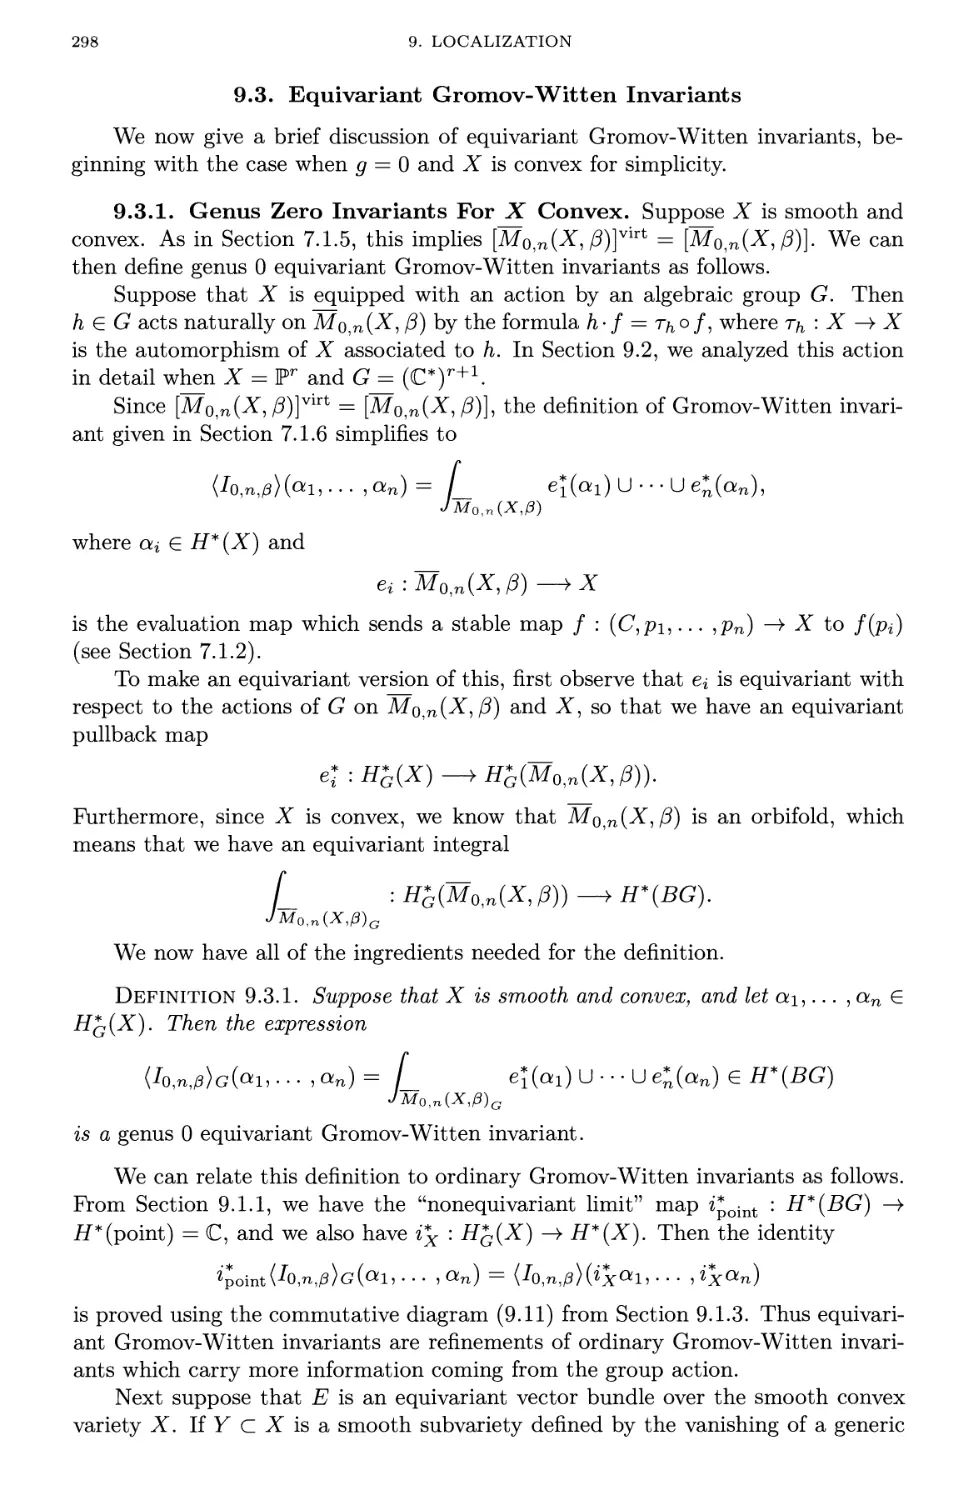 9.3. Equivariant Gromov-Witten Invariants